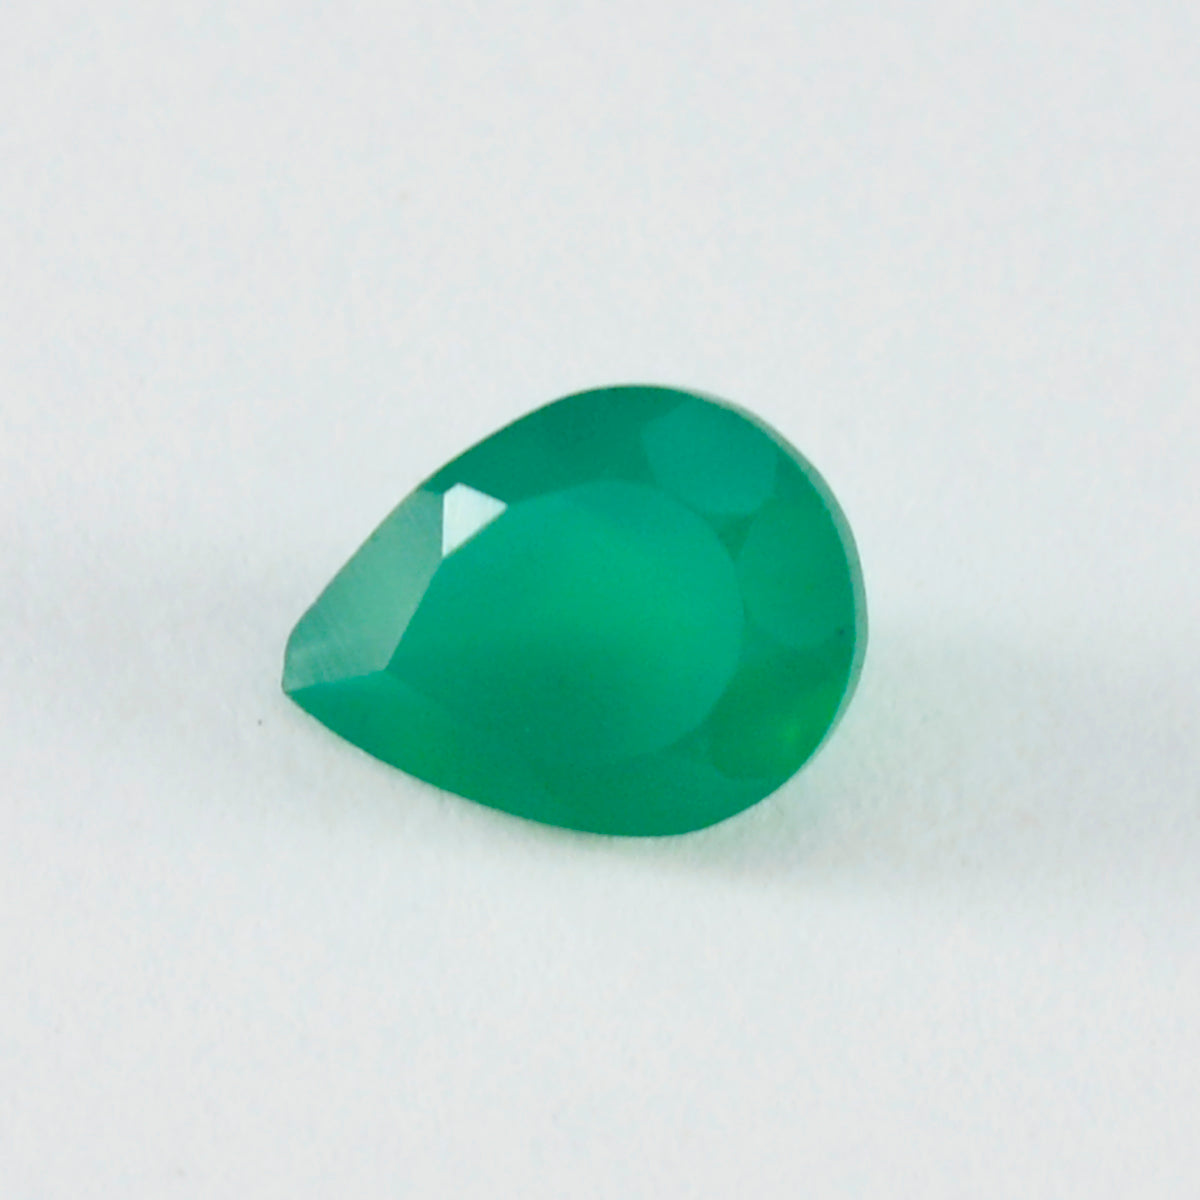 riyogems 1 шт. натуральный зеленый оникс ограненный 12x16 мм грушевидной формы качество ААА, россыпь драгоценных камней